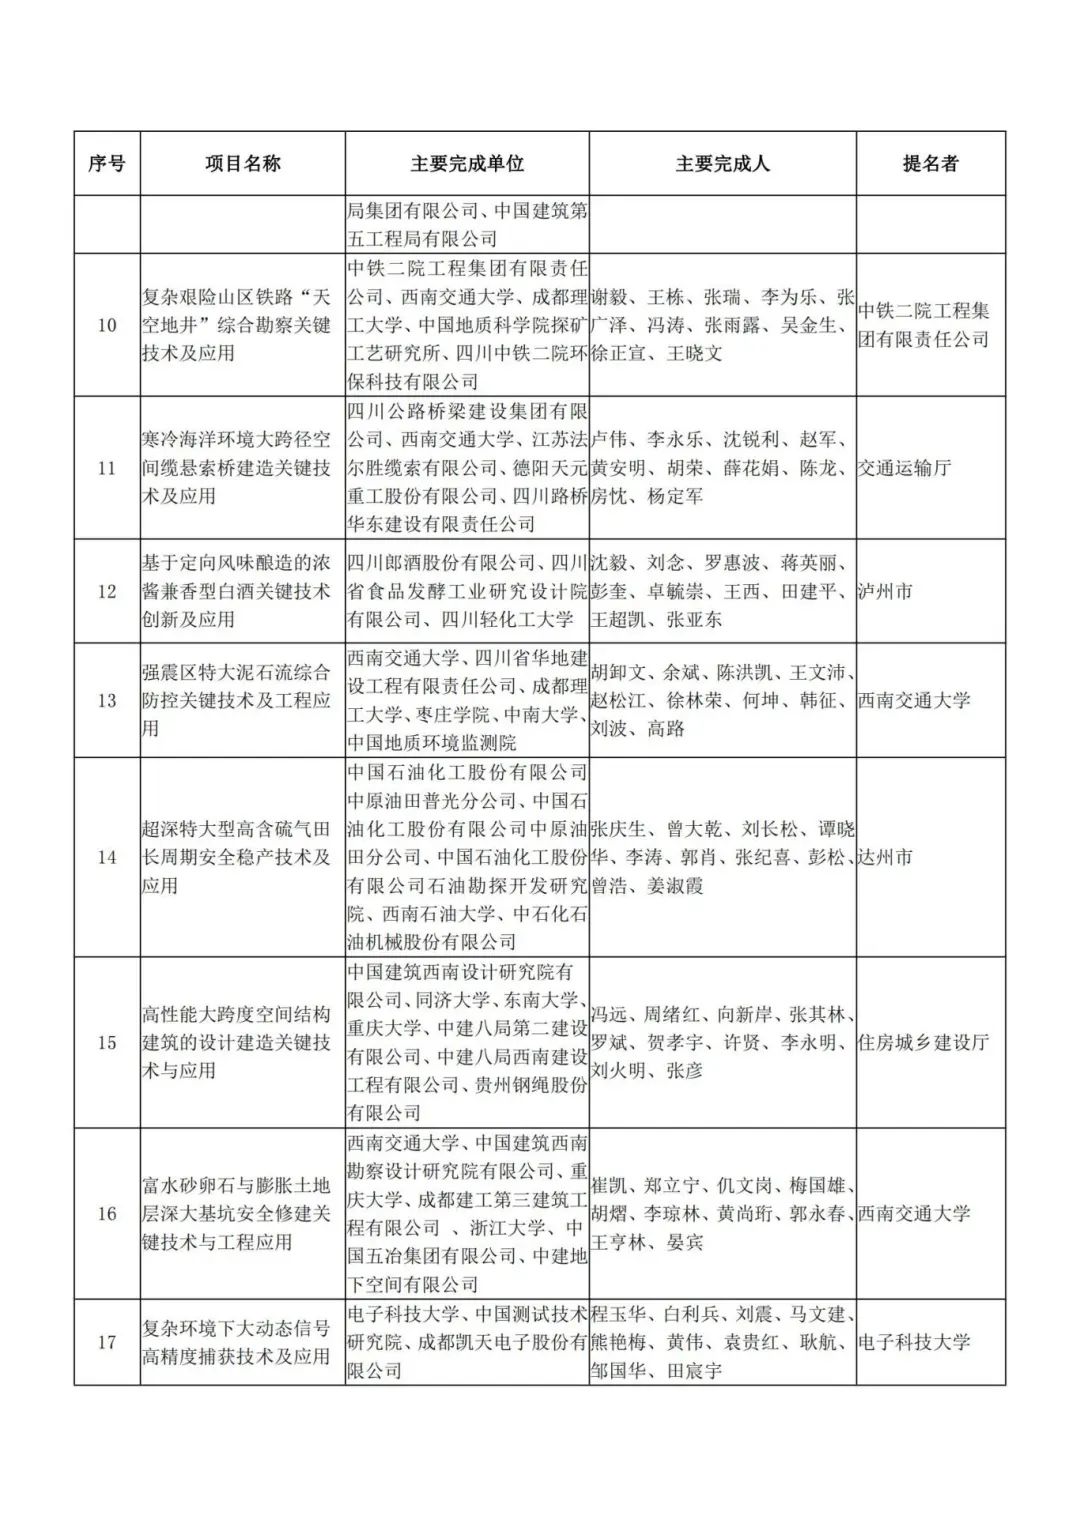 正在公示!四川省科学技术奖获奖项目名单出炉